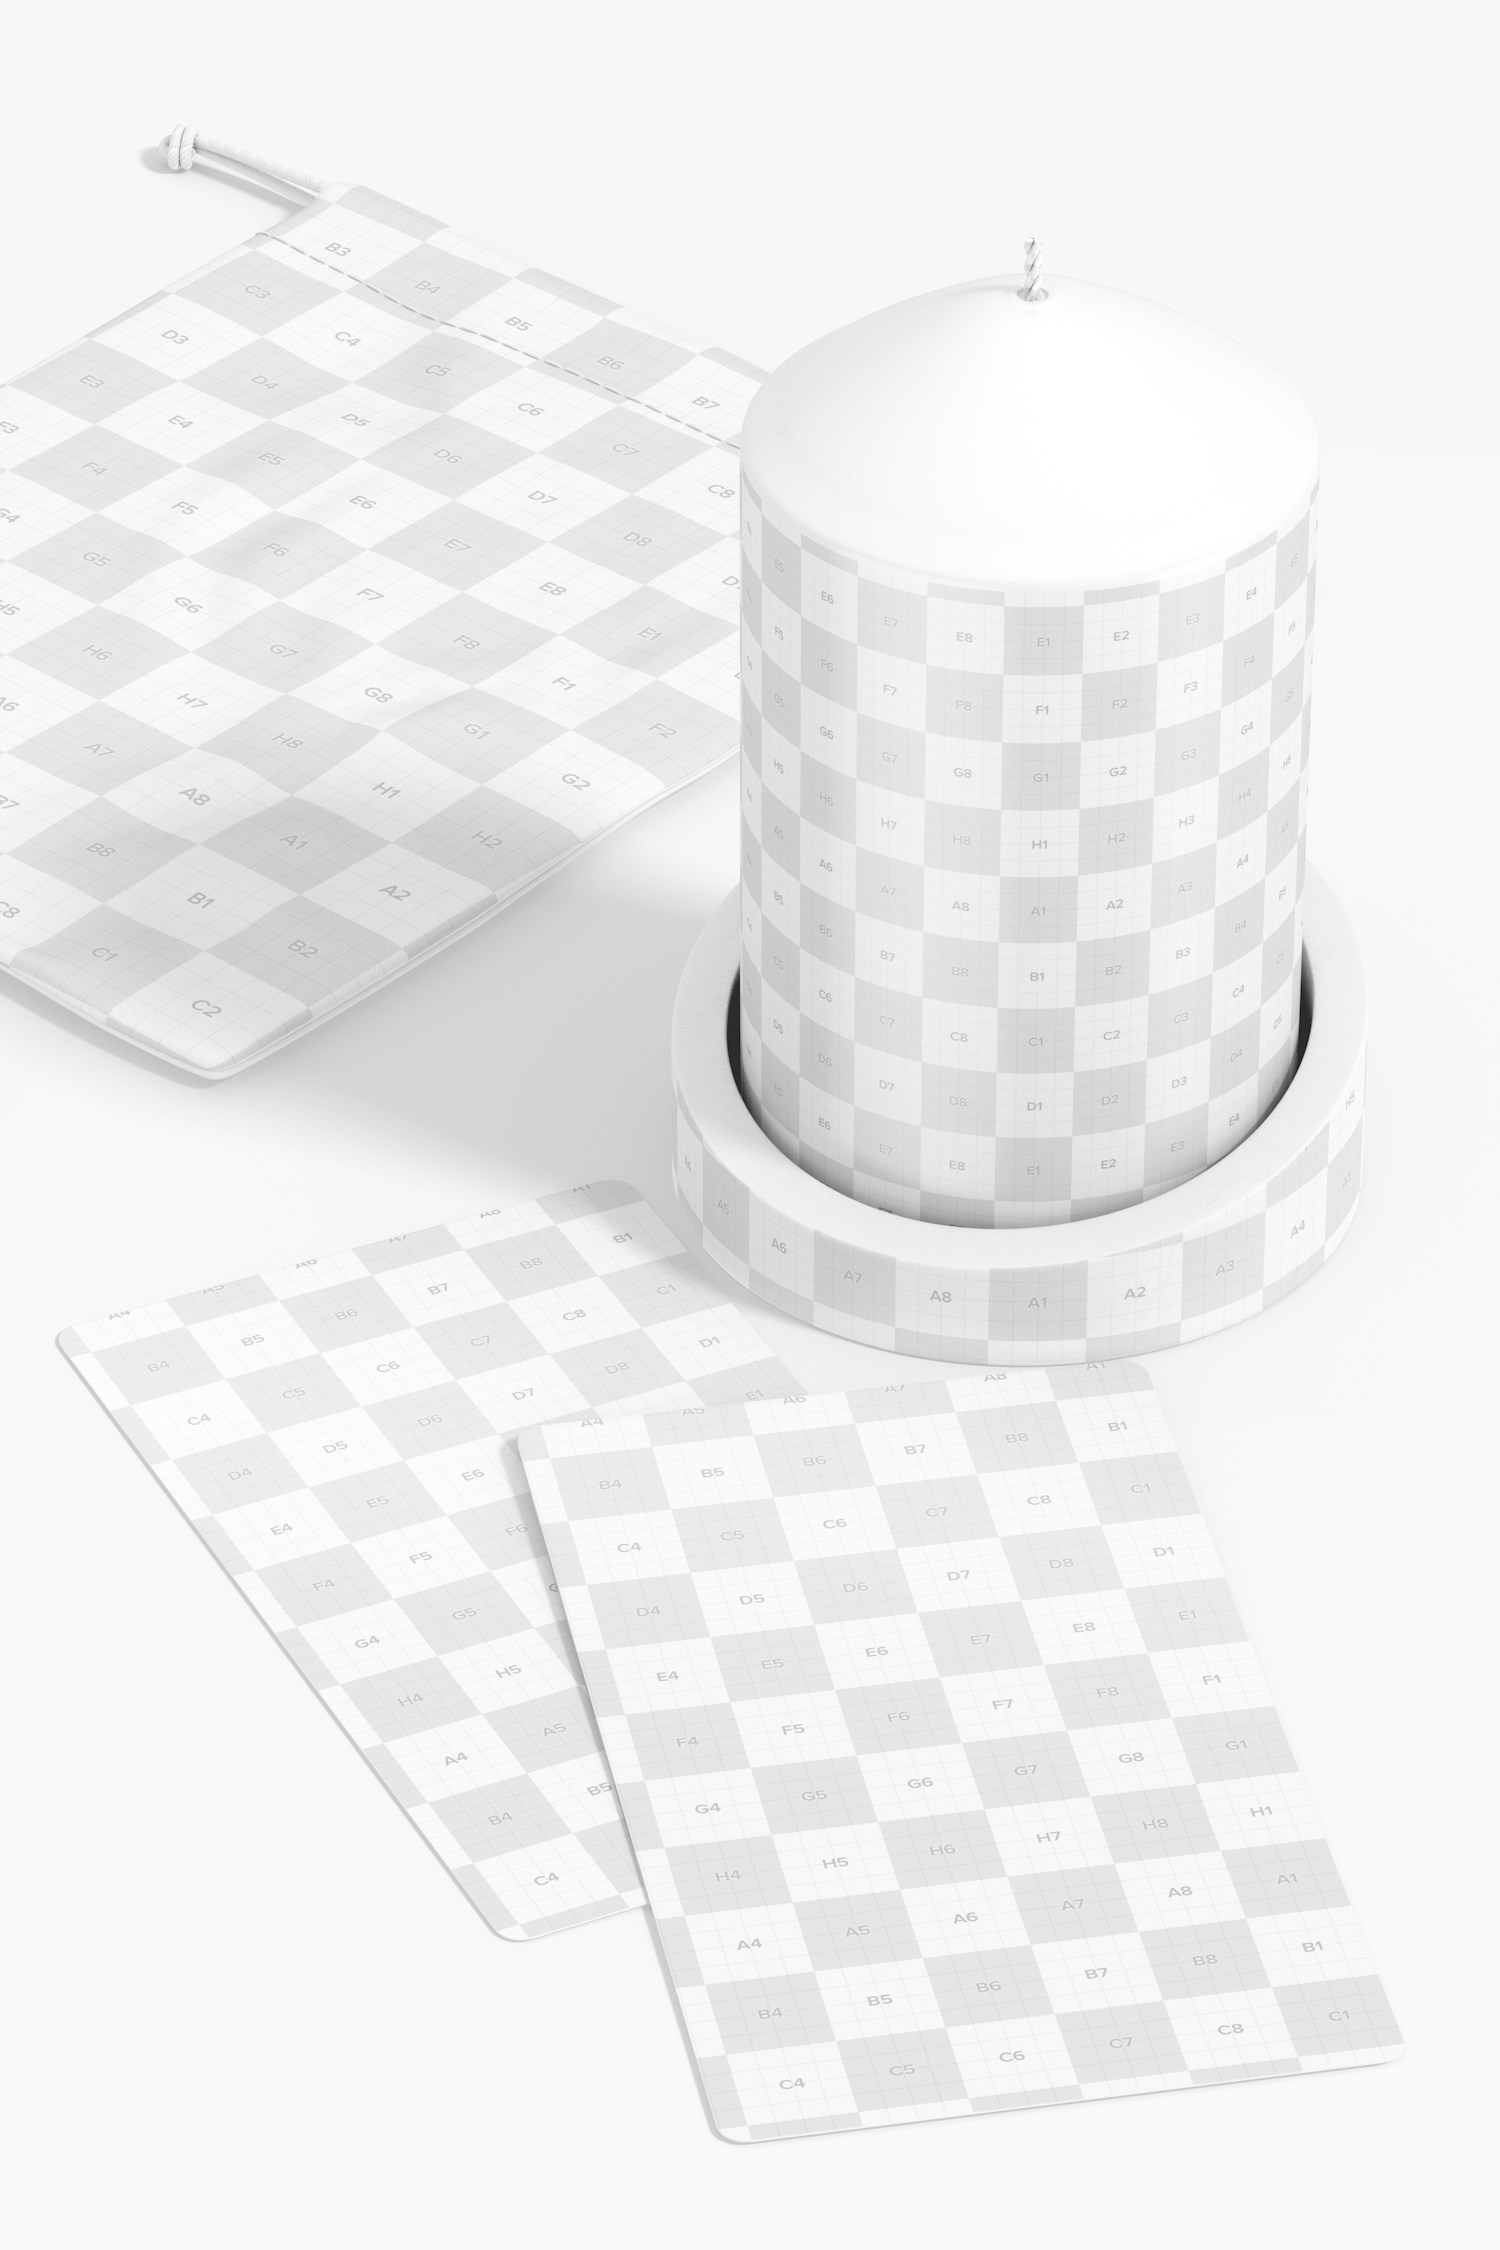 Rectangular Tarot Cards Mockup, with Candle